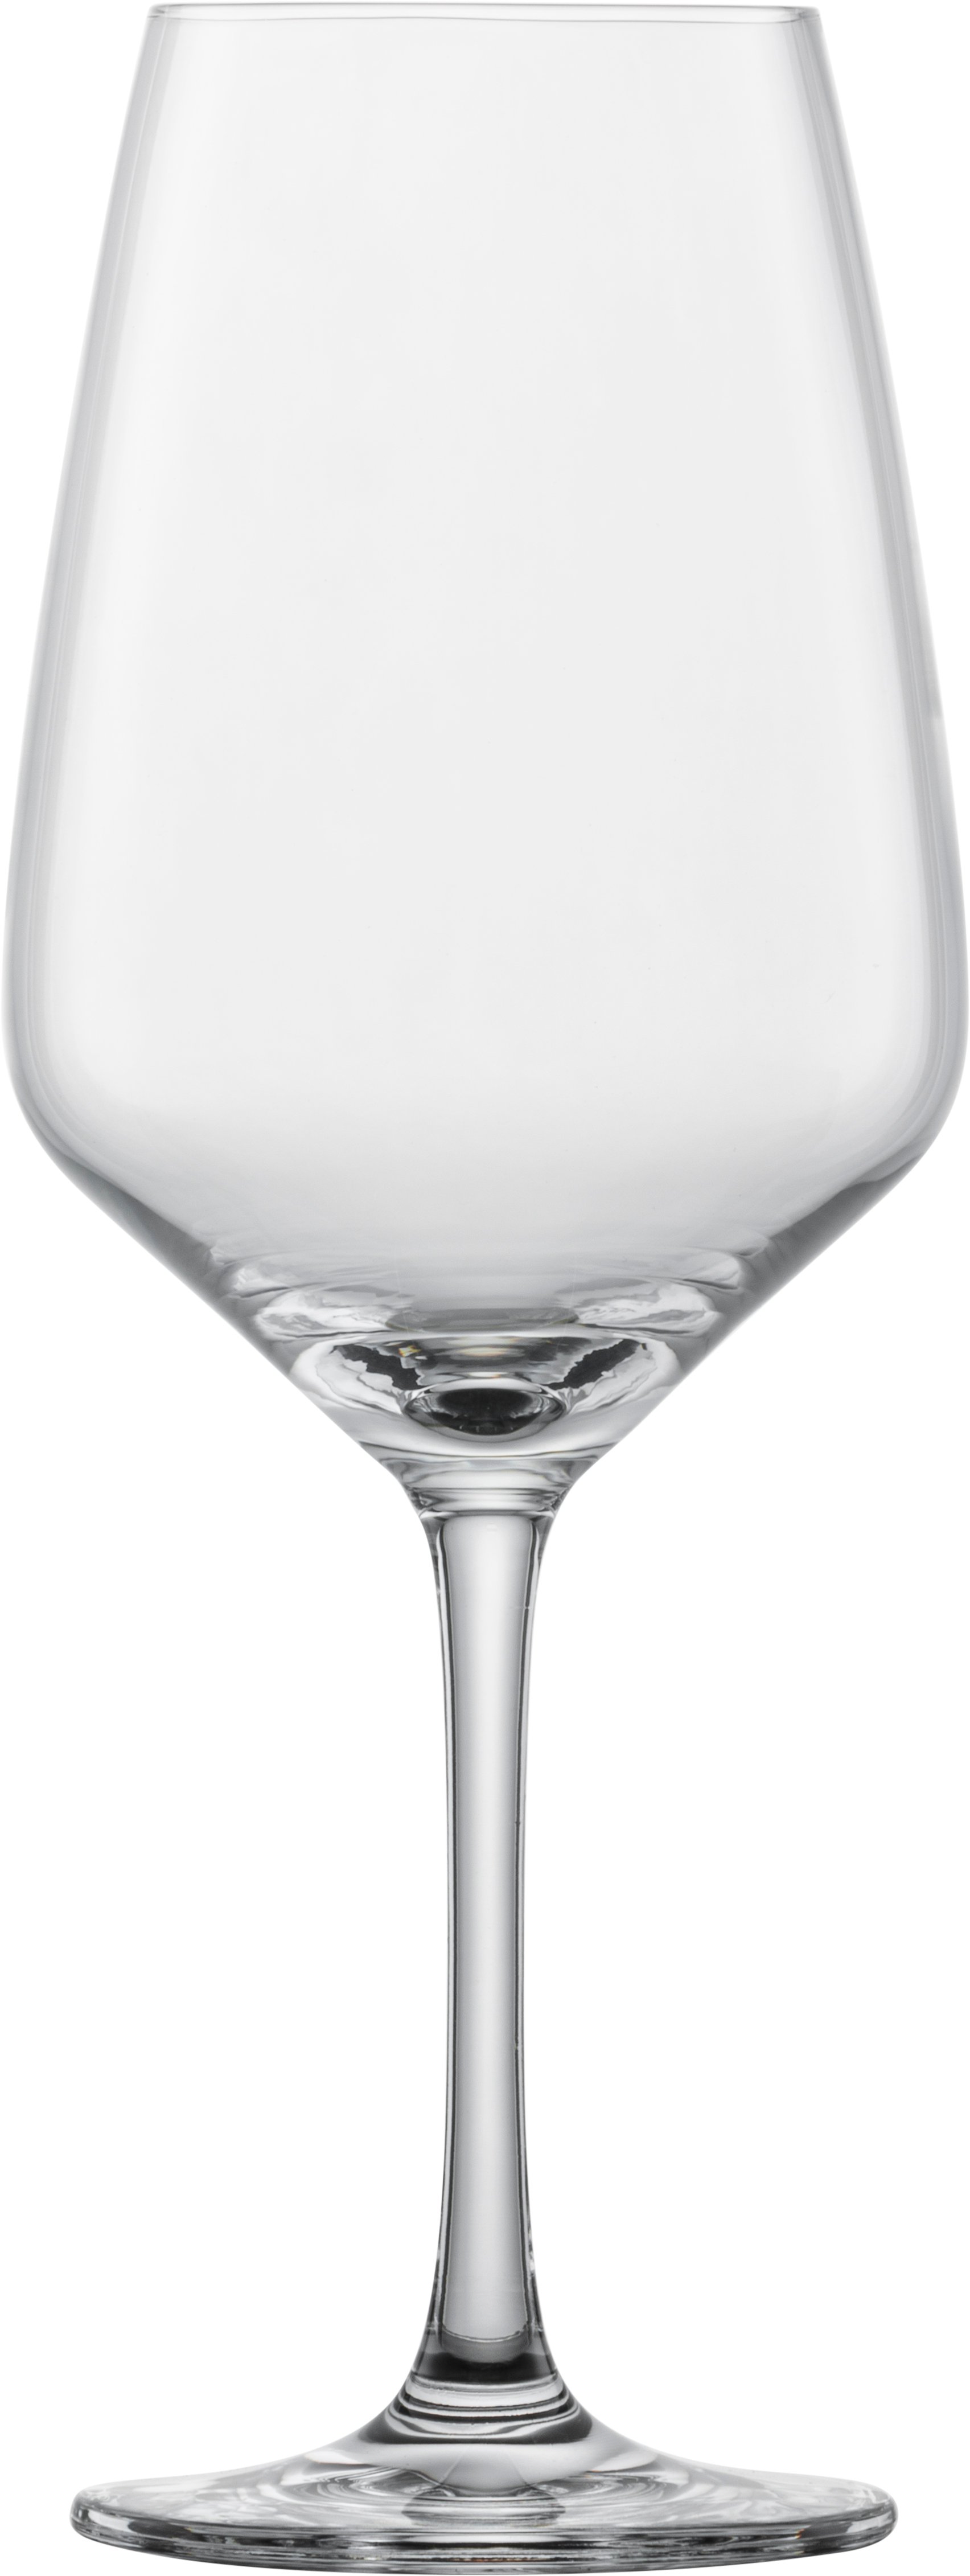 Schott Zwiesel Red wine glass Taste